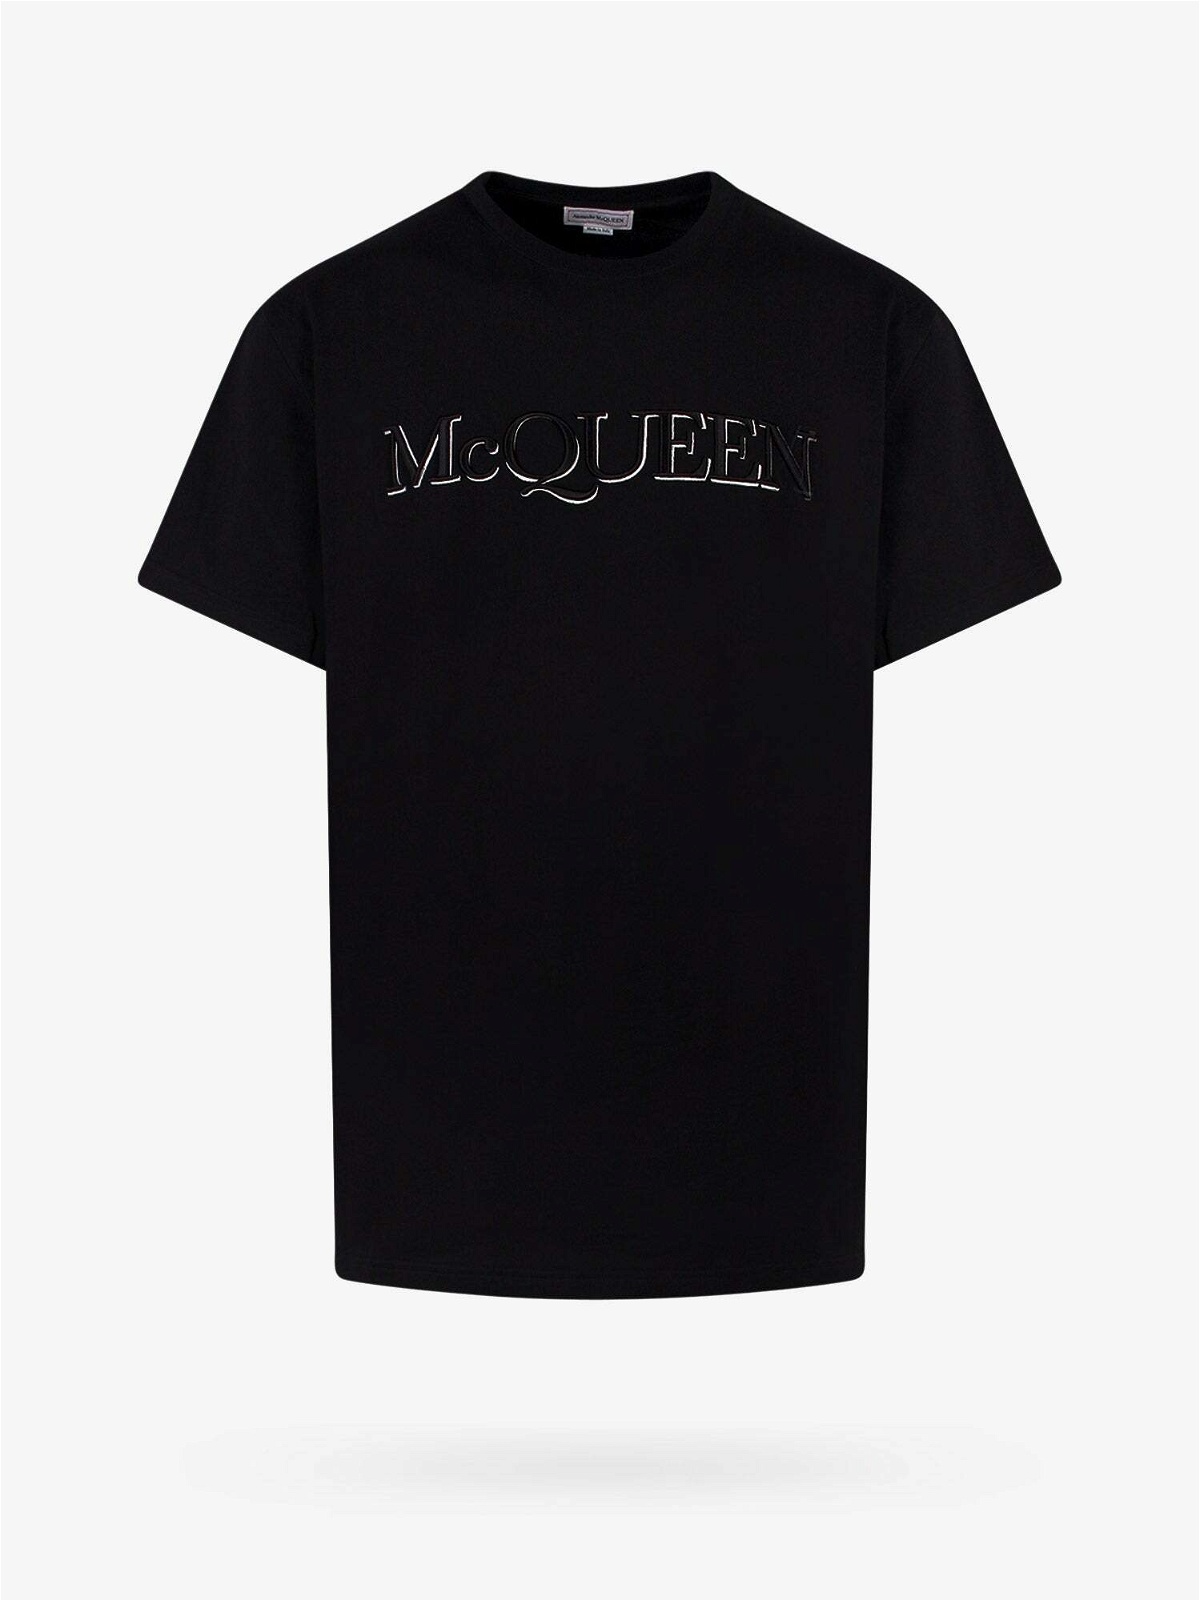 Alexander Mcqueen T Shirt Black Mens Alexander McQueen